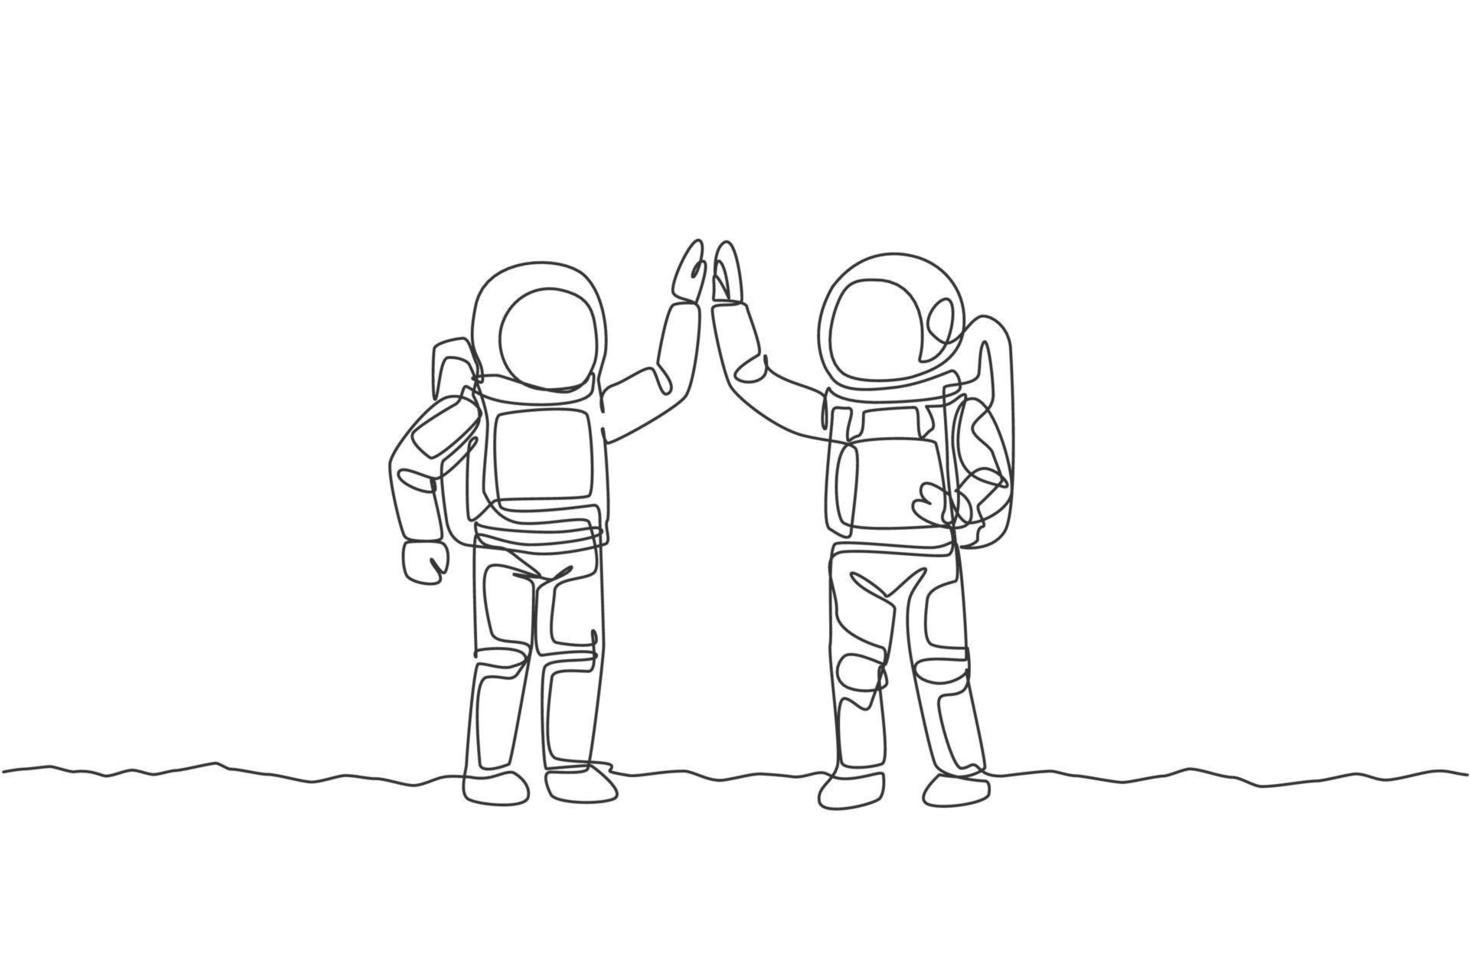 um desenho de linha contínua de dois jovens astronautas felizes dando mais cinco gestos para celebrar o trabalho em equipe na superfície da lua. conceito de astronauta. ilustração gráfica de vetor de desenho de linha única dinâmica